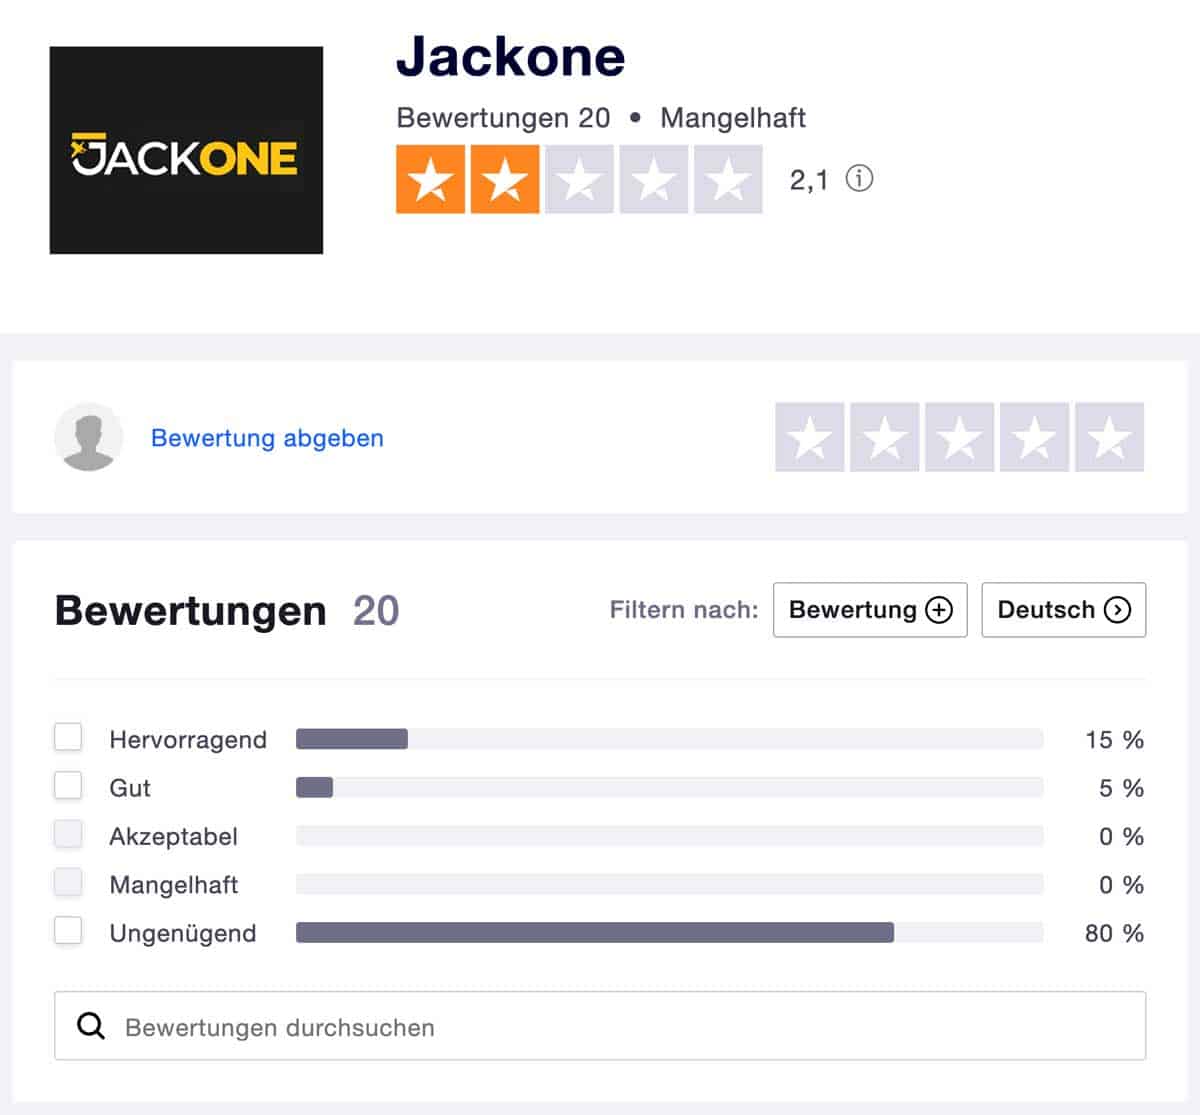 Jackone Erfahrungsbericht trustpilot.com